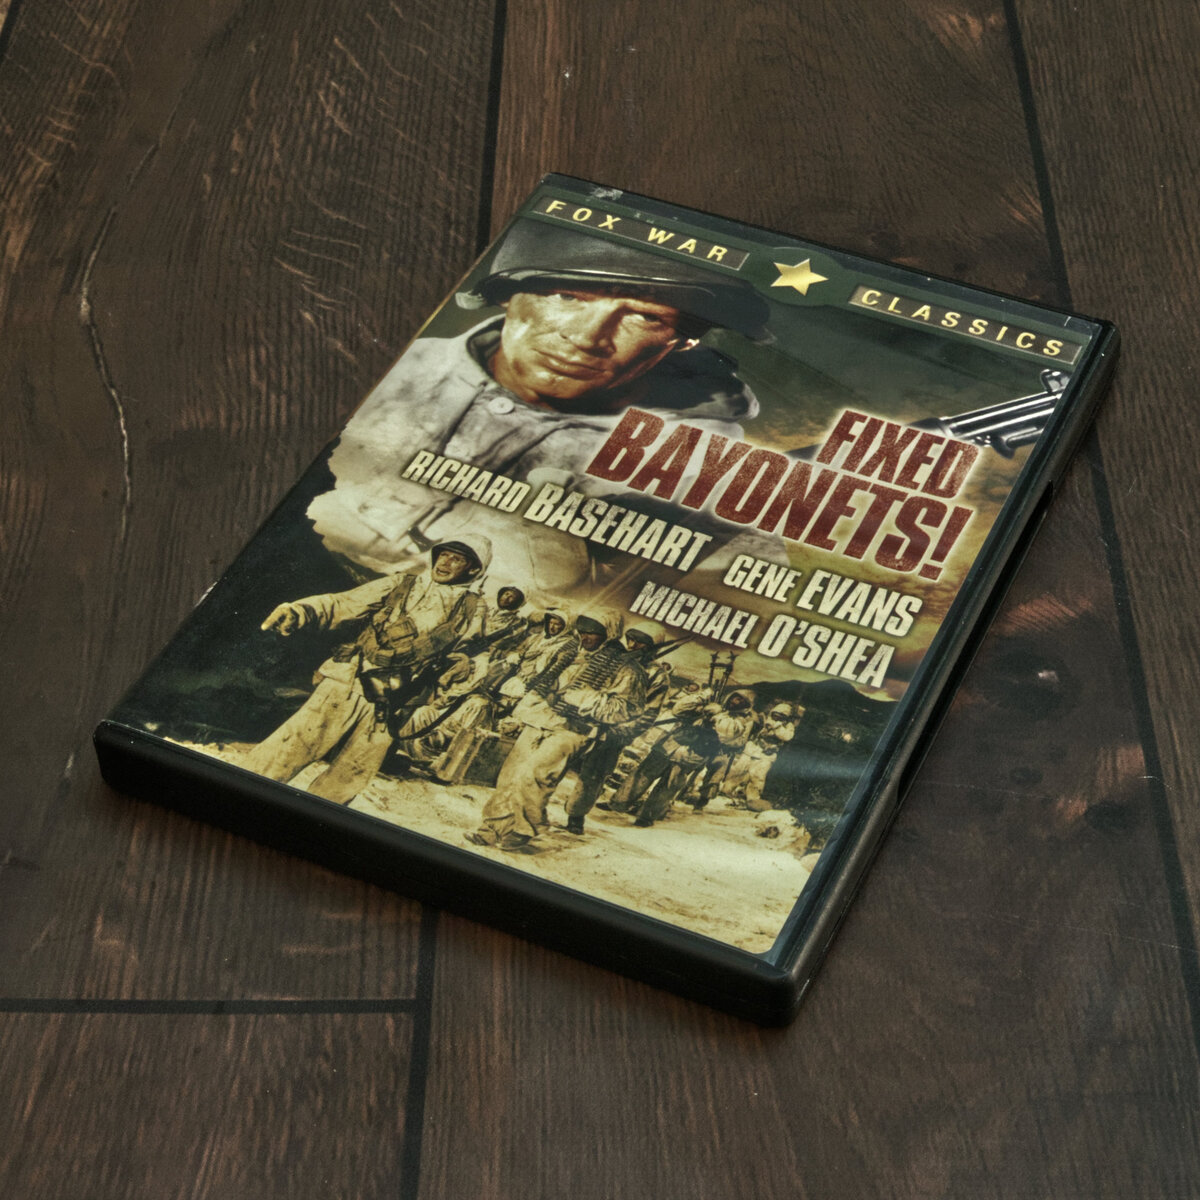 Fixed Bayonets Movie DVD